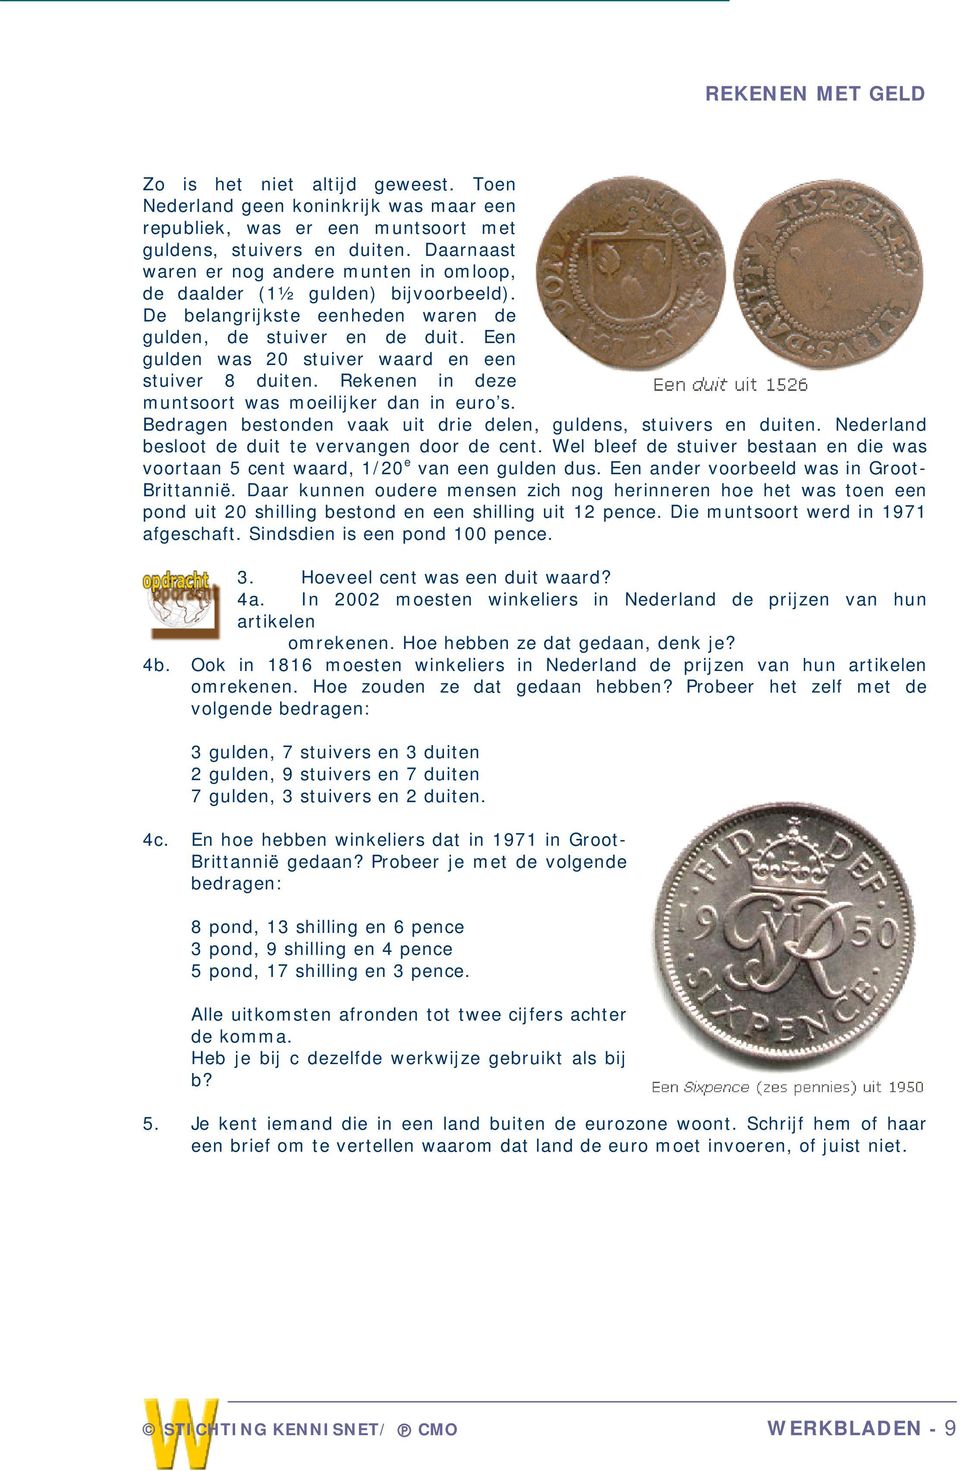 Een gulden was 20 stuiver waard en een stuiver 8 duiten. Rekenen in deze muntsoort was moeilijker dan in euro s. Bedragen bestonden vaak uit drie delen, guldens, stuivers en duiten.